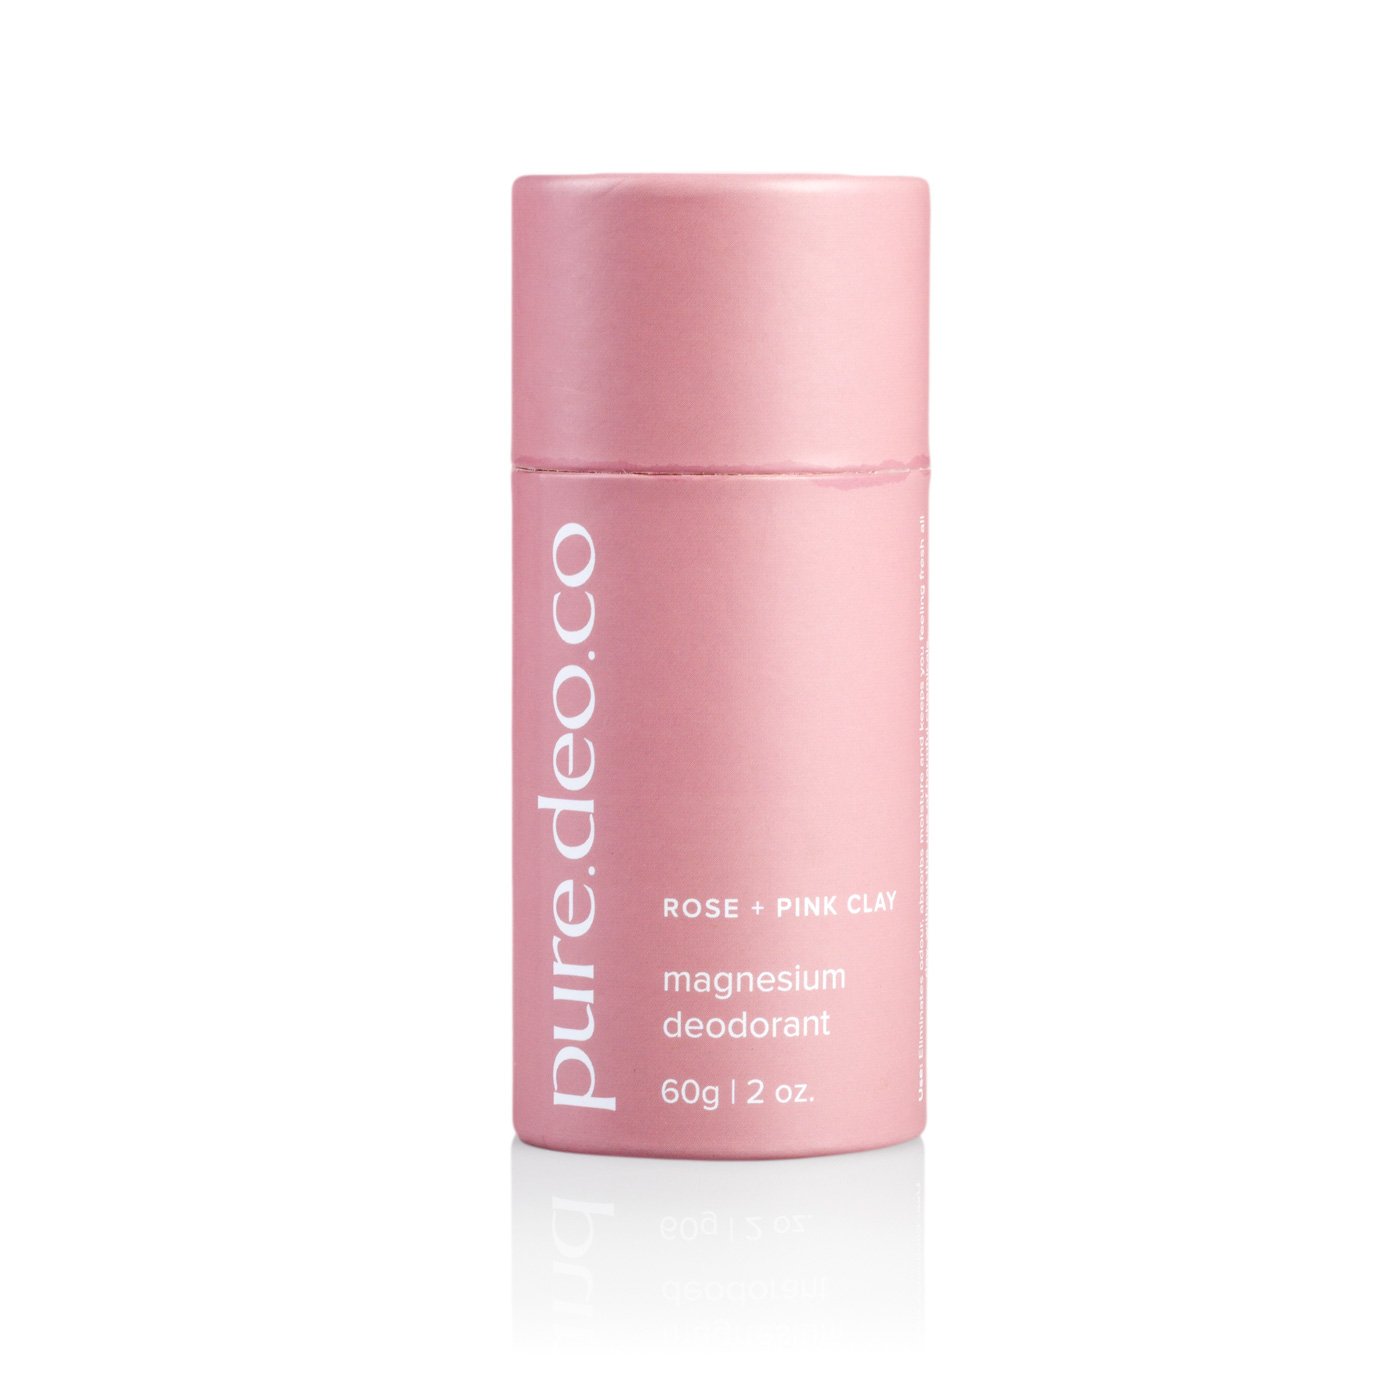 Rose + Pink Clay Magnesium Deodorant 100% Natural